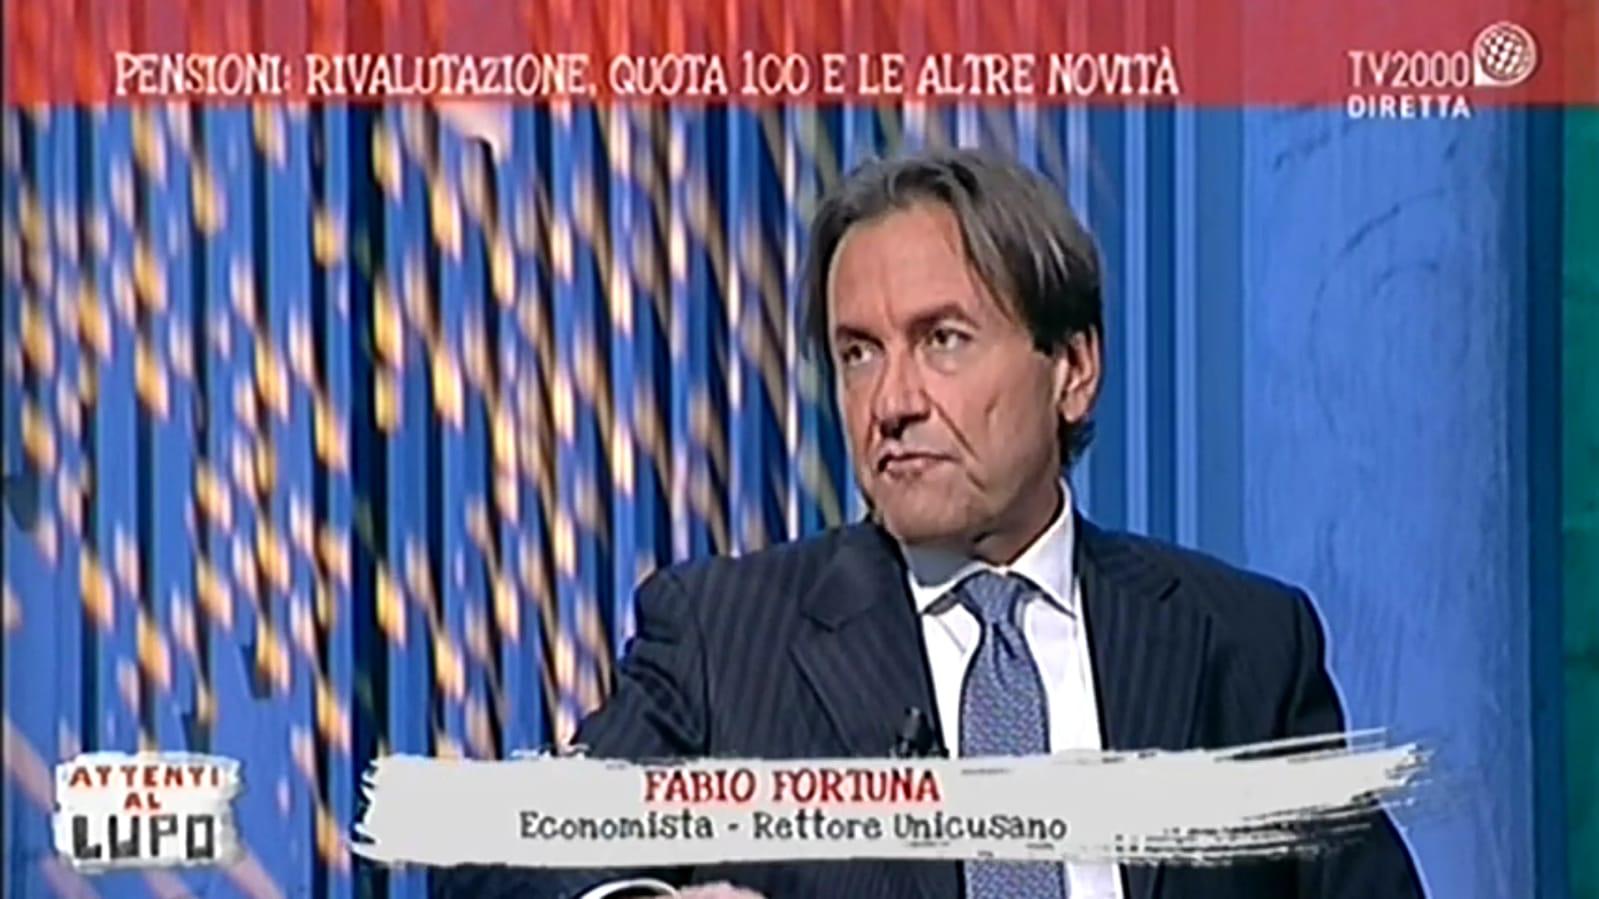 Fabio Fortuna a “Attenti al Lupo” TV 2000 (puntata del 30/04/2019)